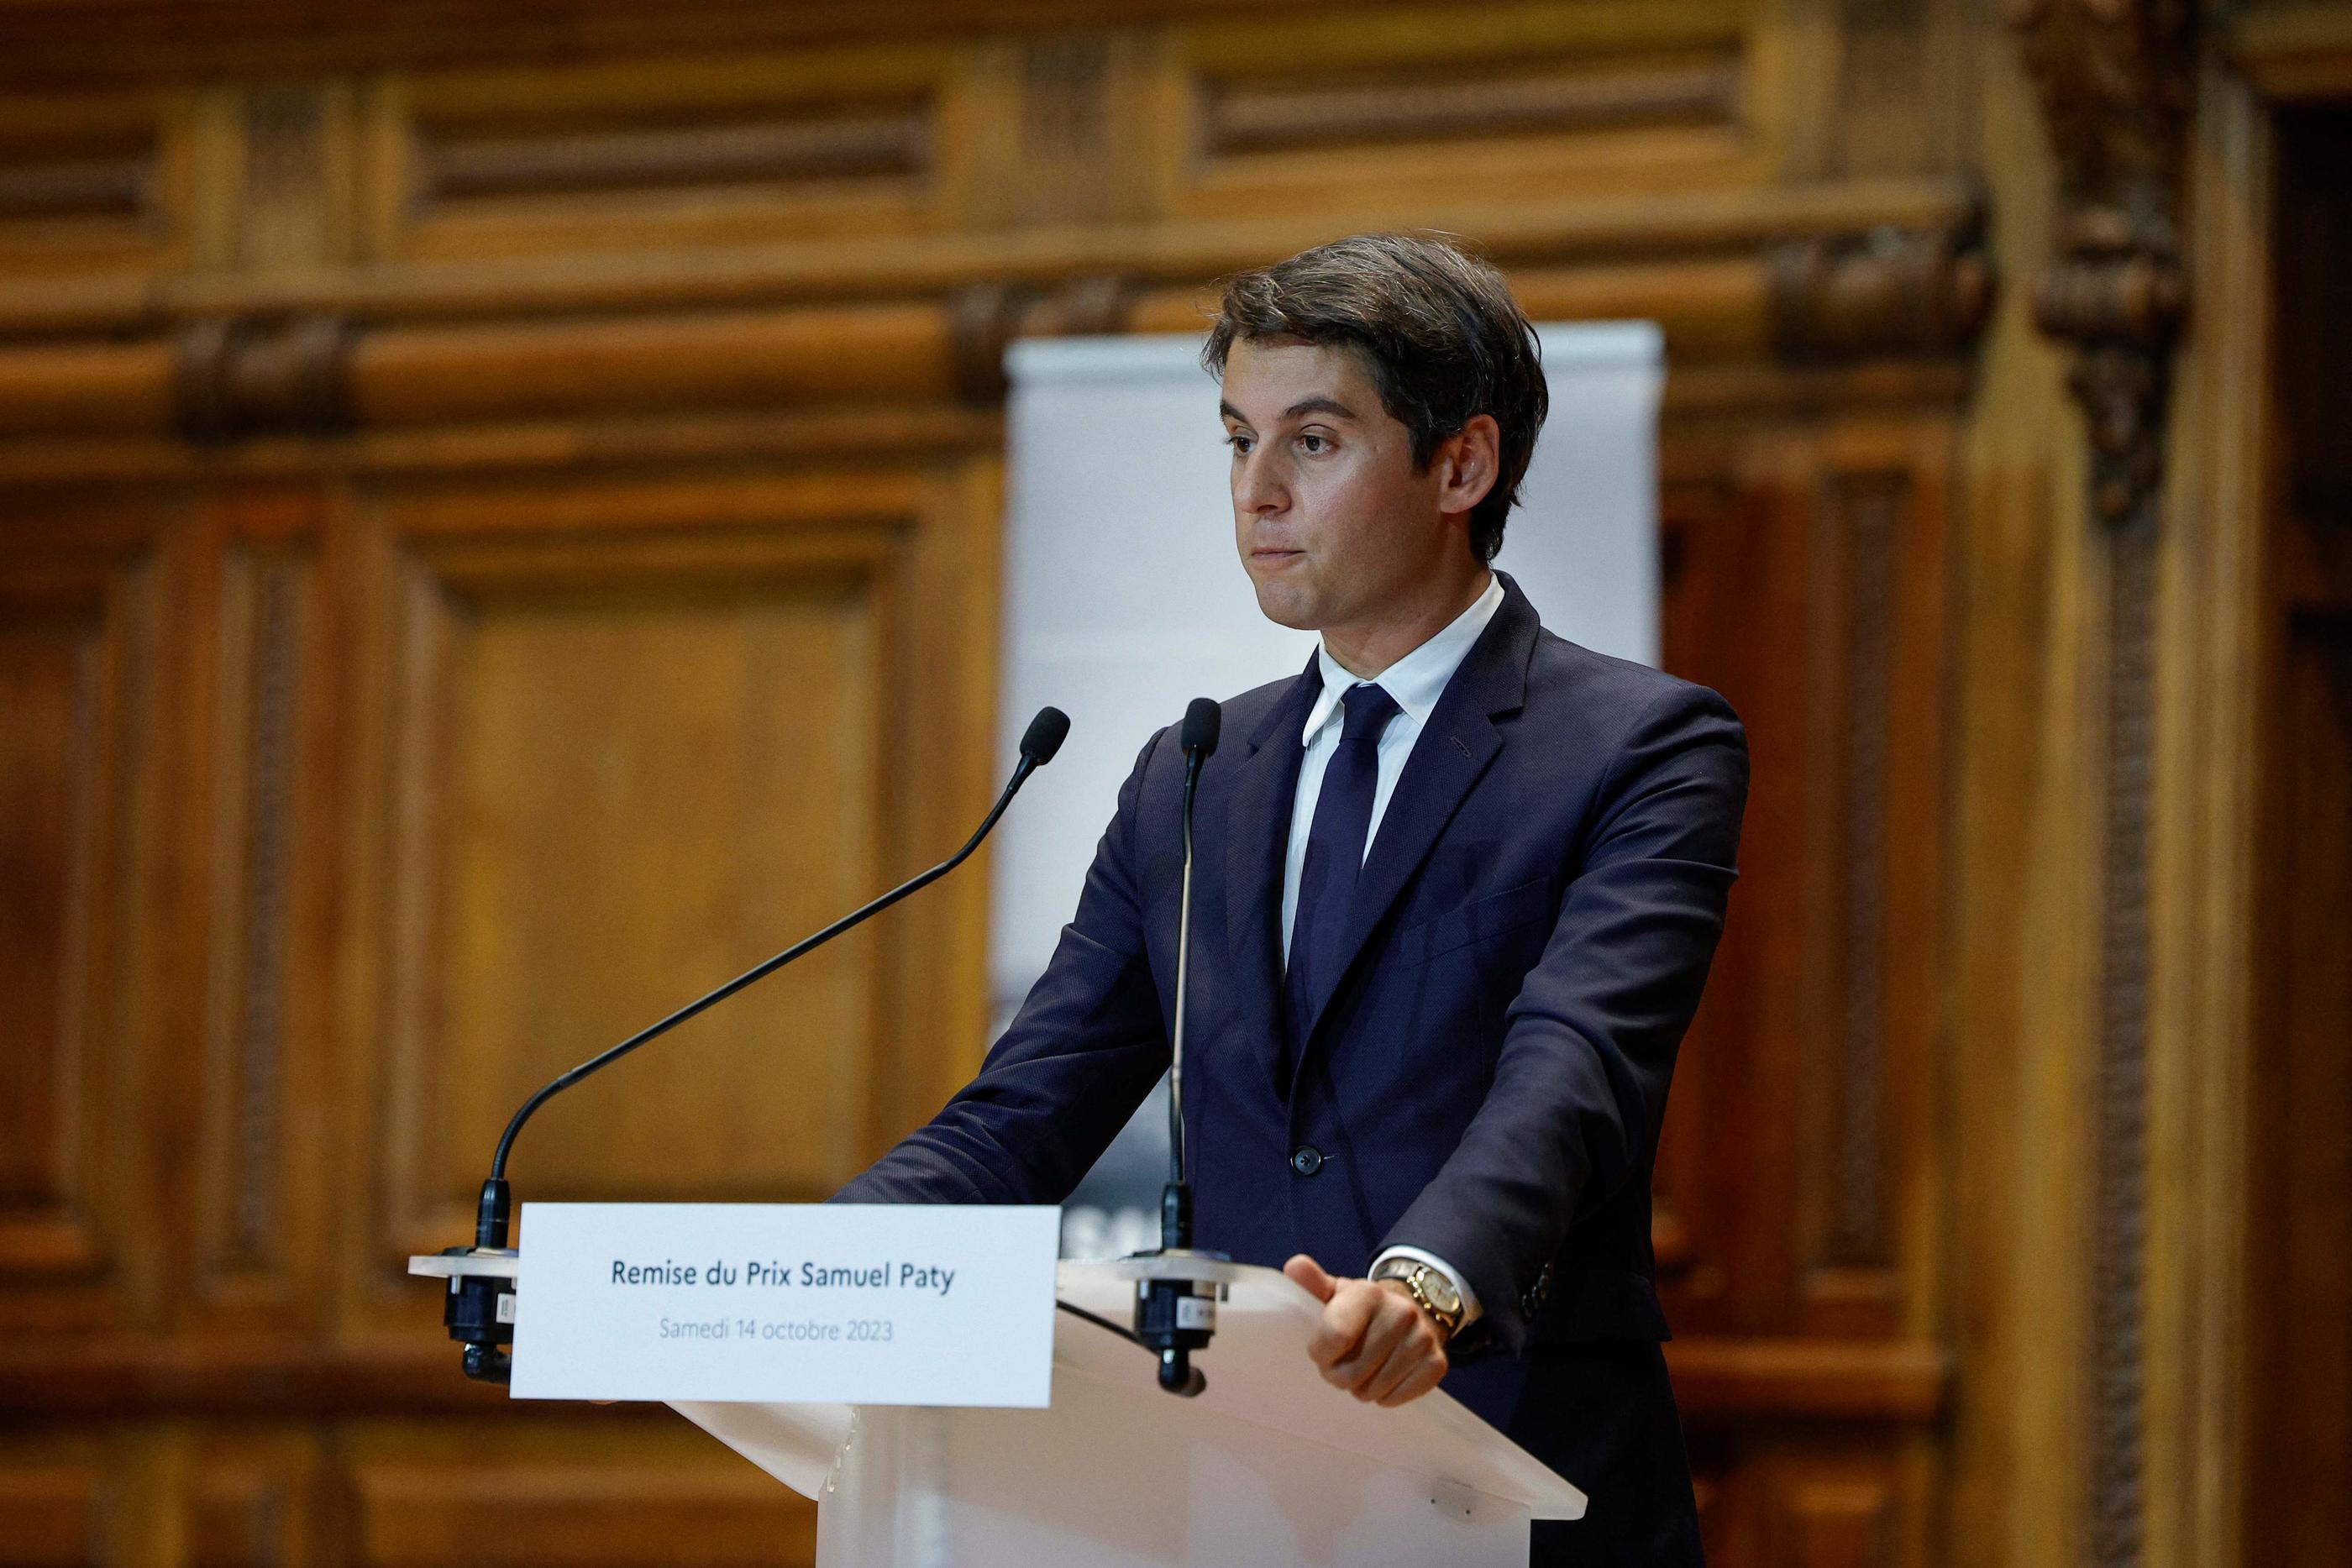 Le ministre de l'Education Gabriel Attal lors de son allocution à la Sorbonne à Paris, ce samedi. AFP/ Geoffroy VAN DER HASSELT